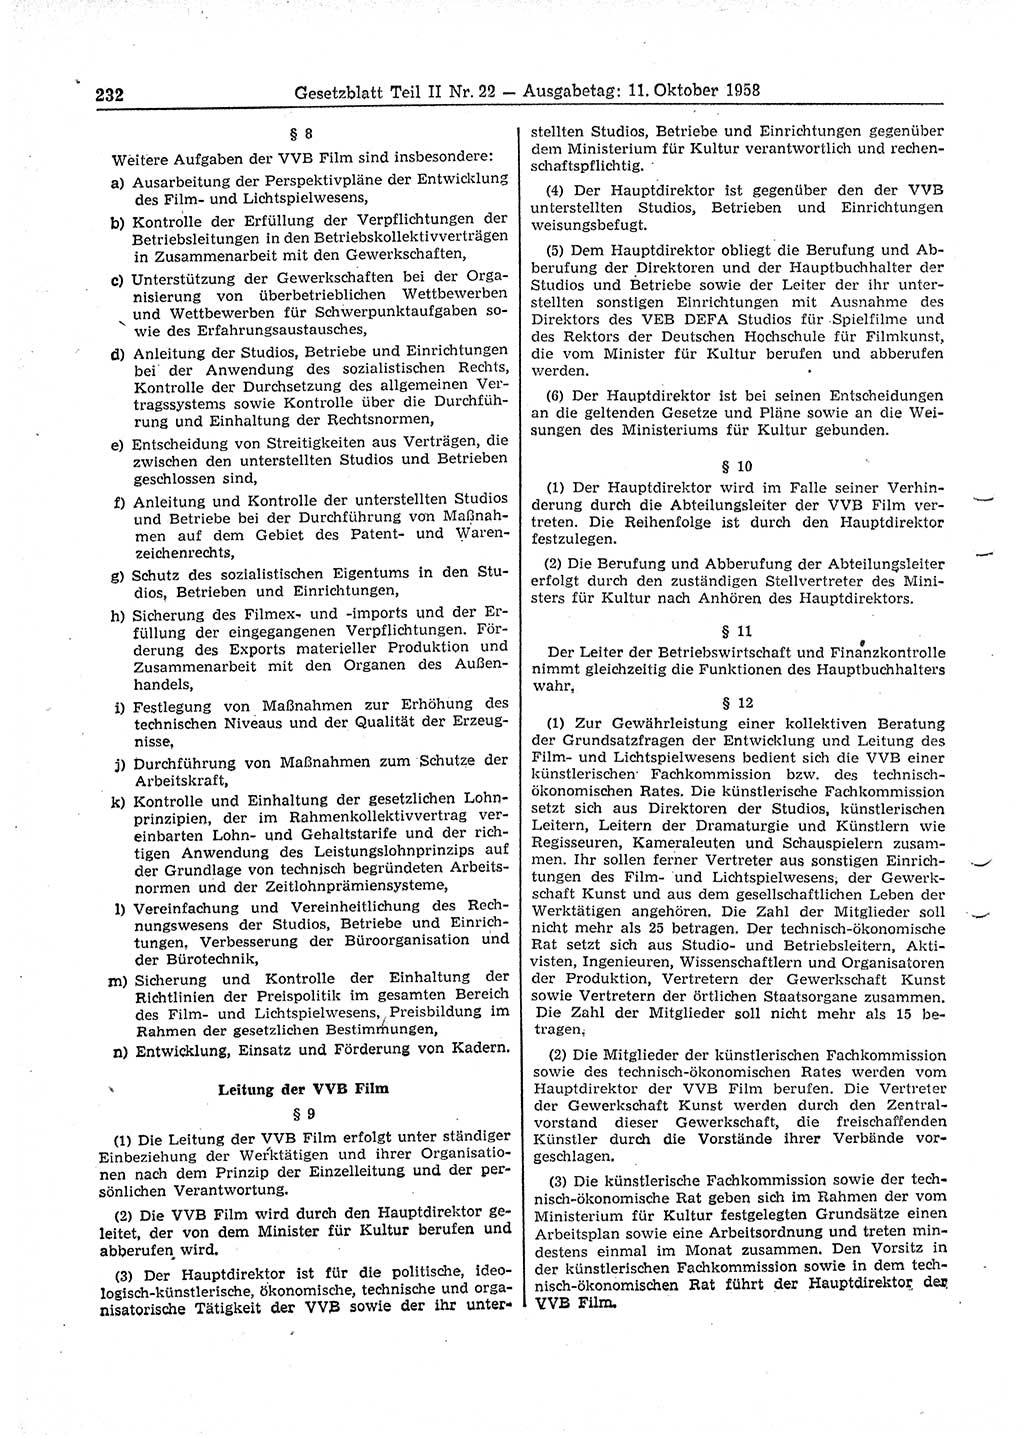 Gesetzblatt (GBl.) der Deutschen Demokratischen Republik (DDR) Teil ⅠⅠ 1958, Seite 232 (GBl. DDR ⅠⅠ 1958, S. 232)